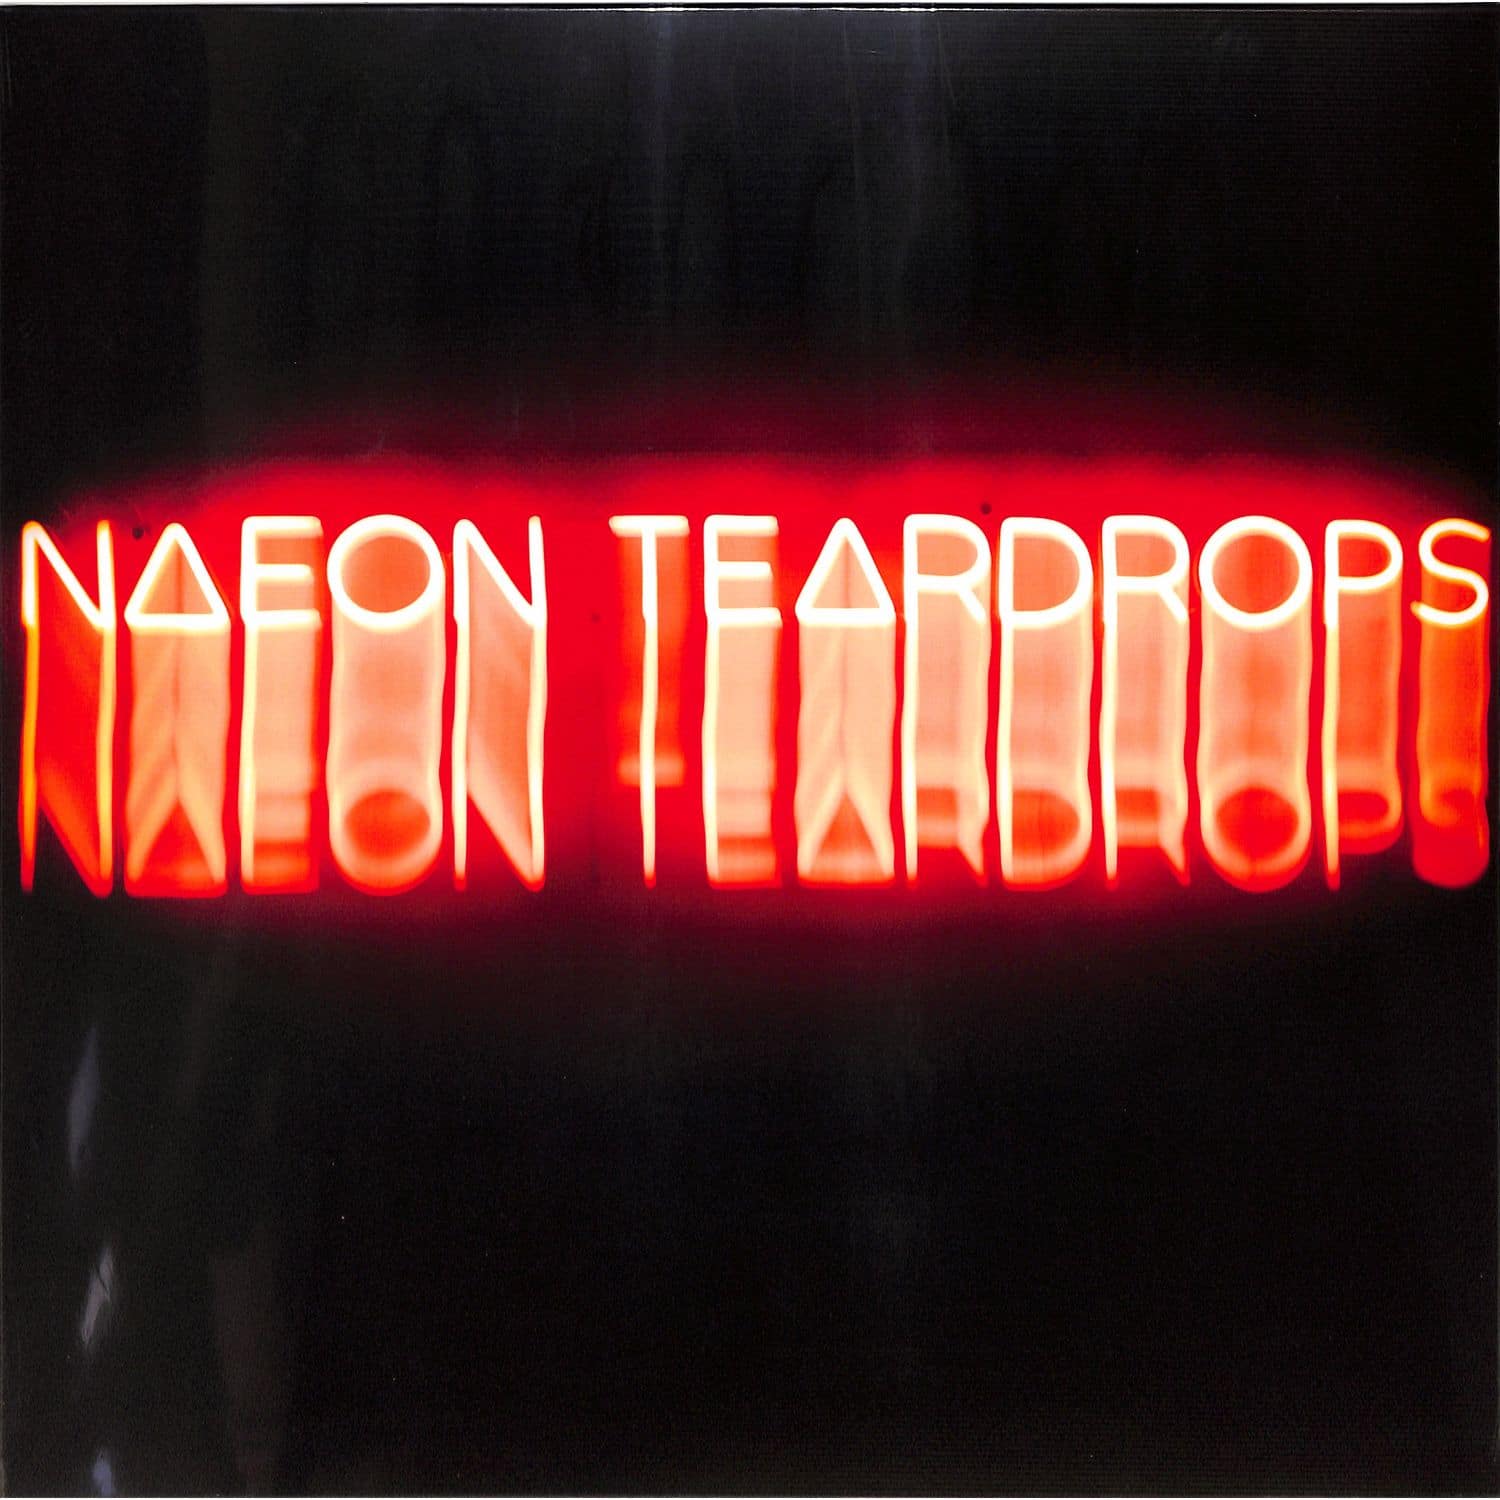 Naeon Teardrops - TESTIMONY 